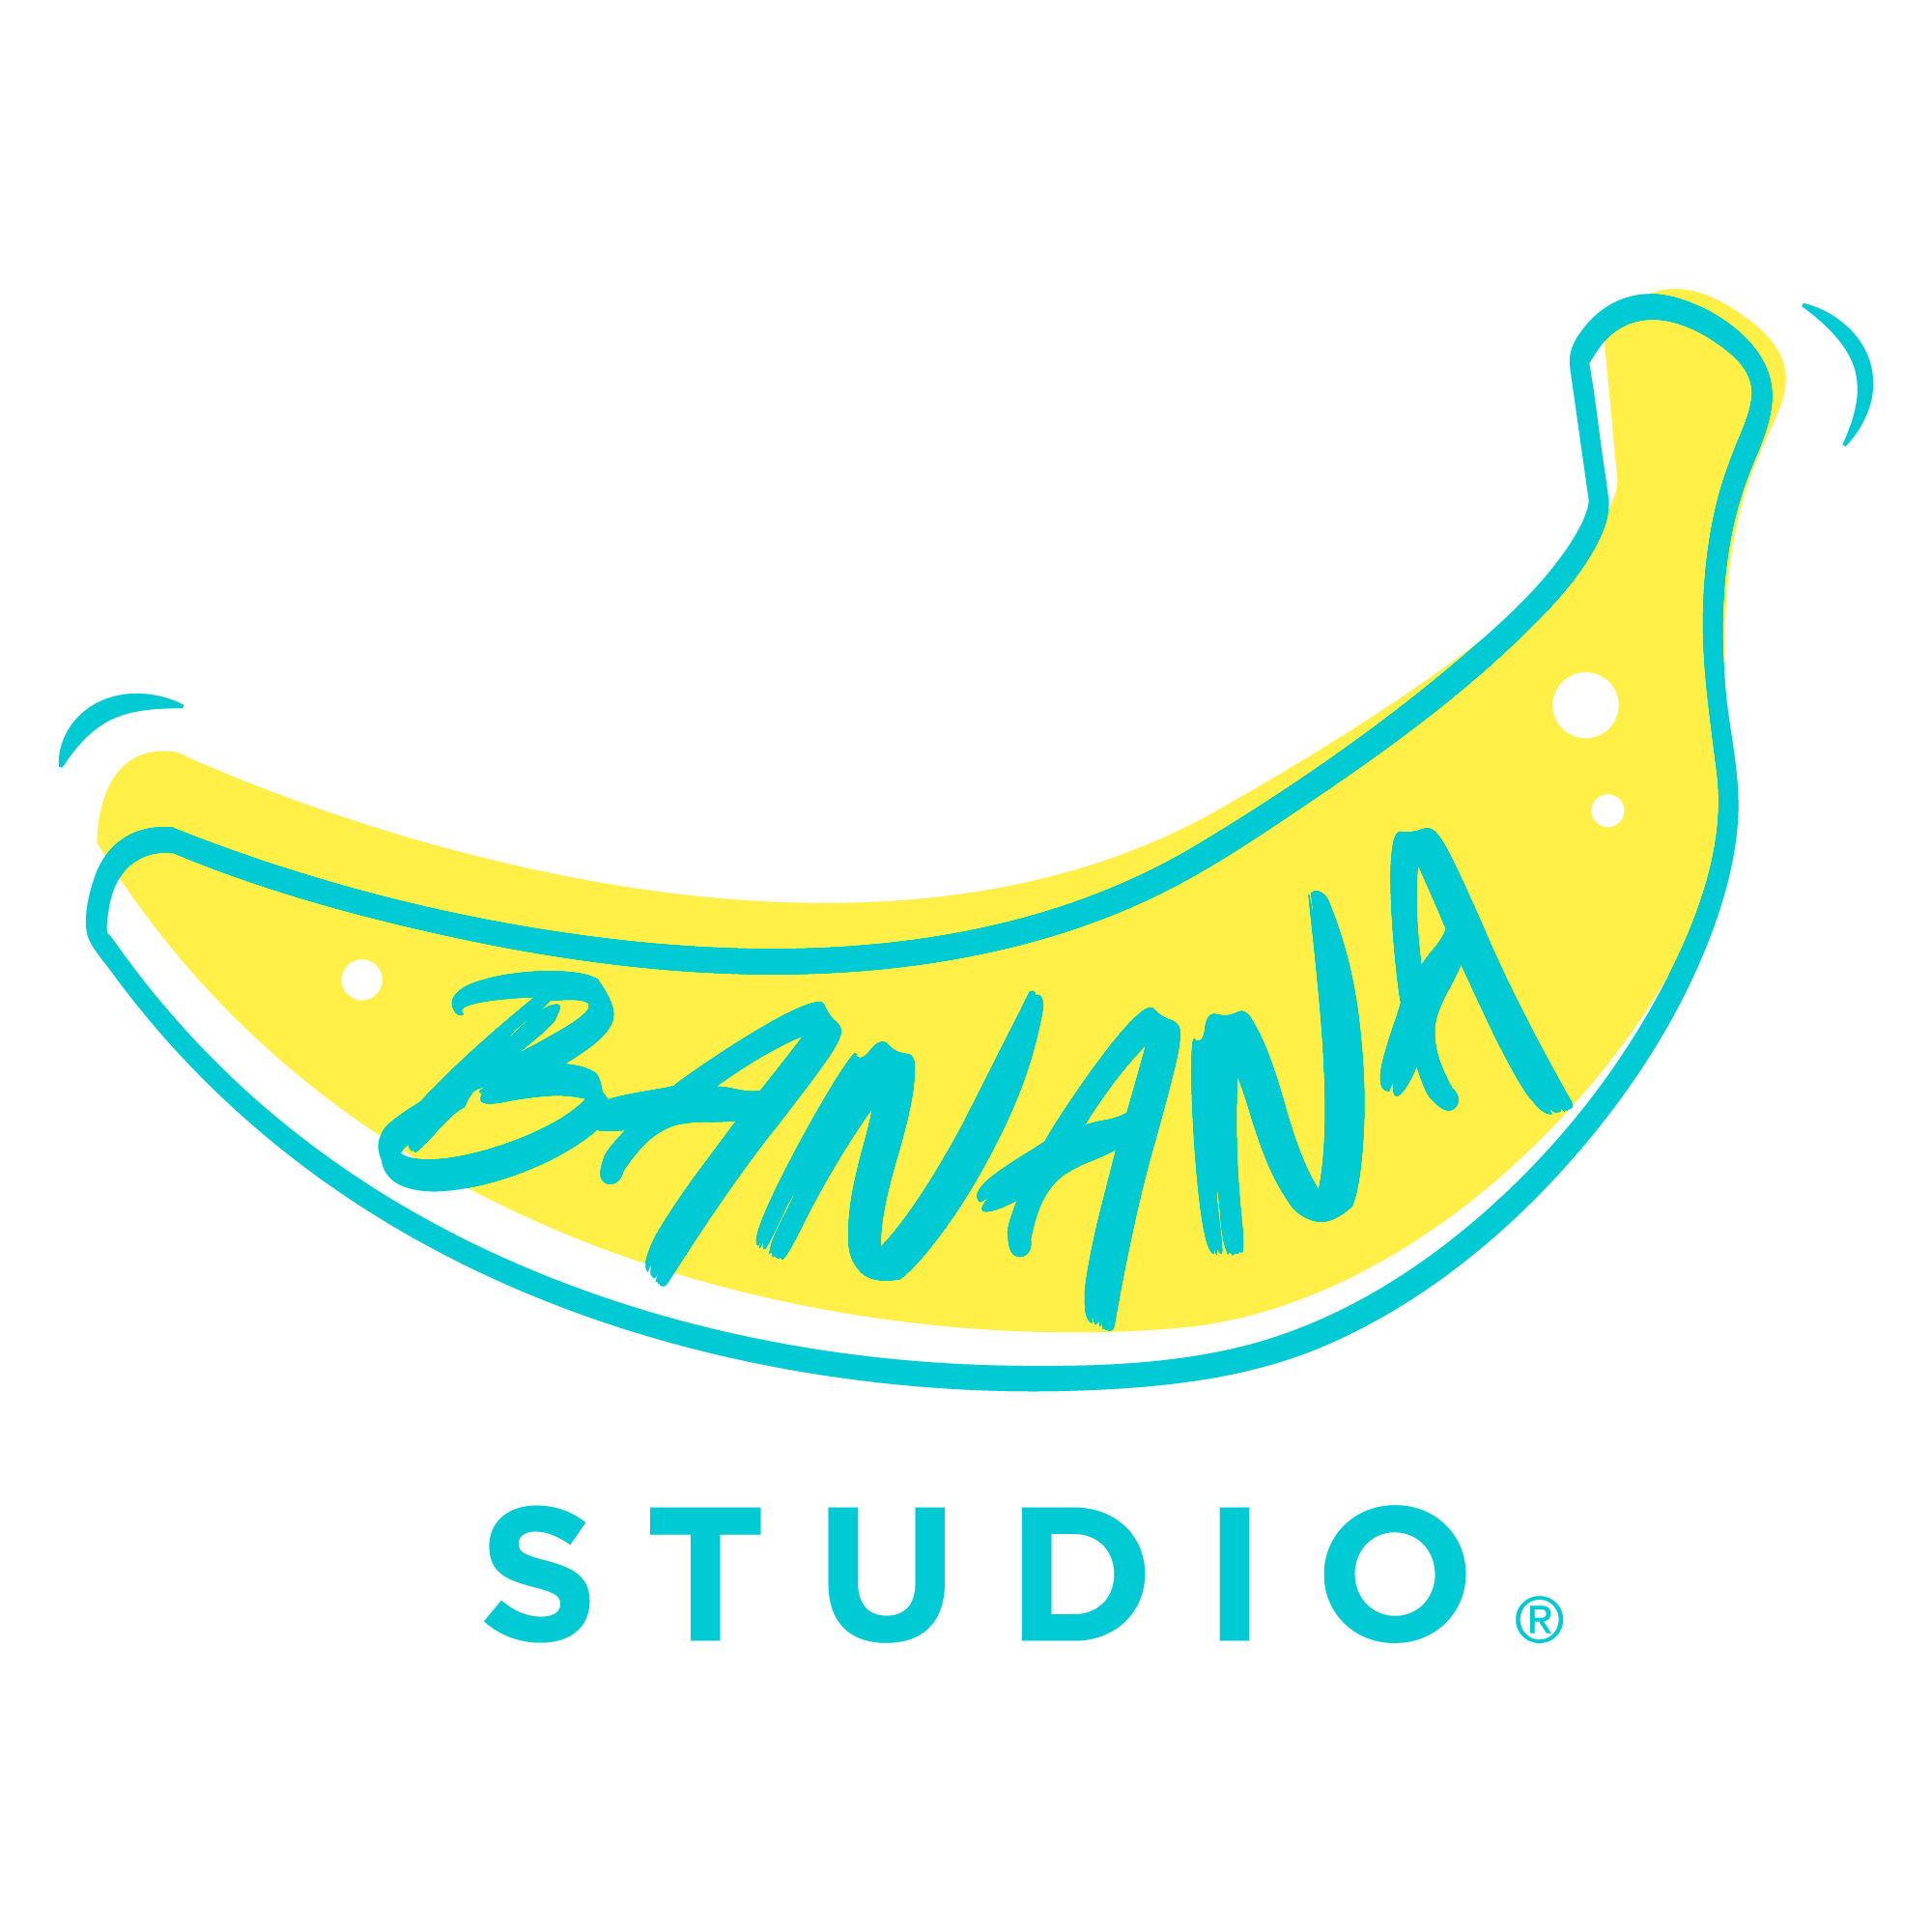 Le Banana Studio